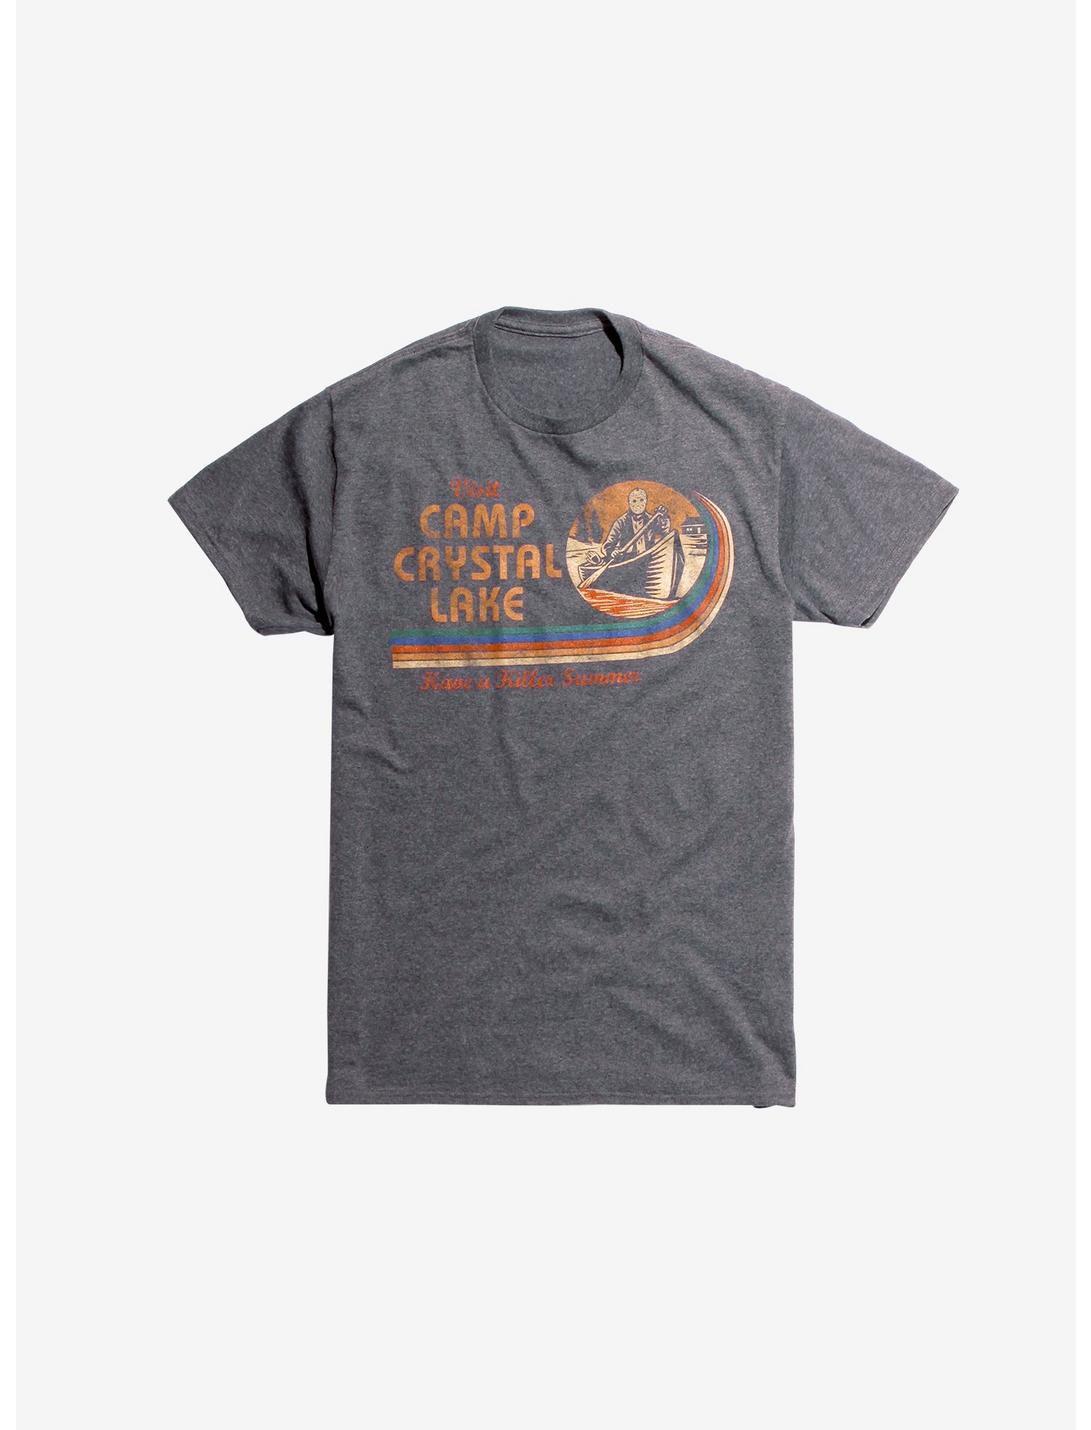 Friday The 13th Visit Camp Crystal Lake T-Shirt | Hot Topic